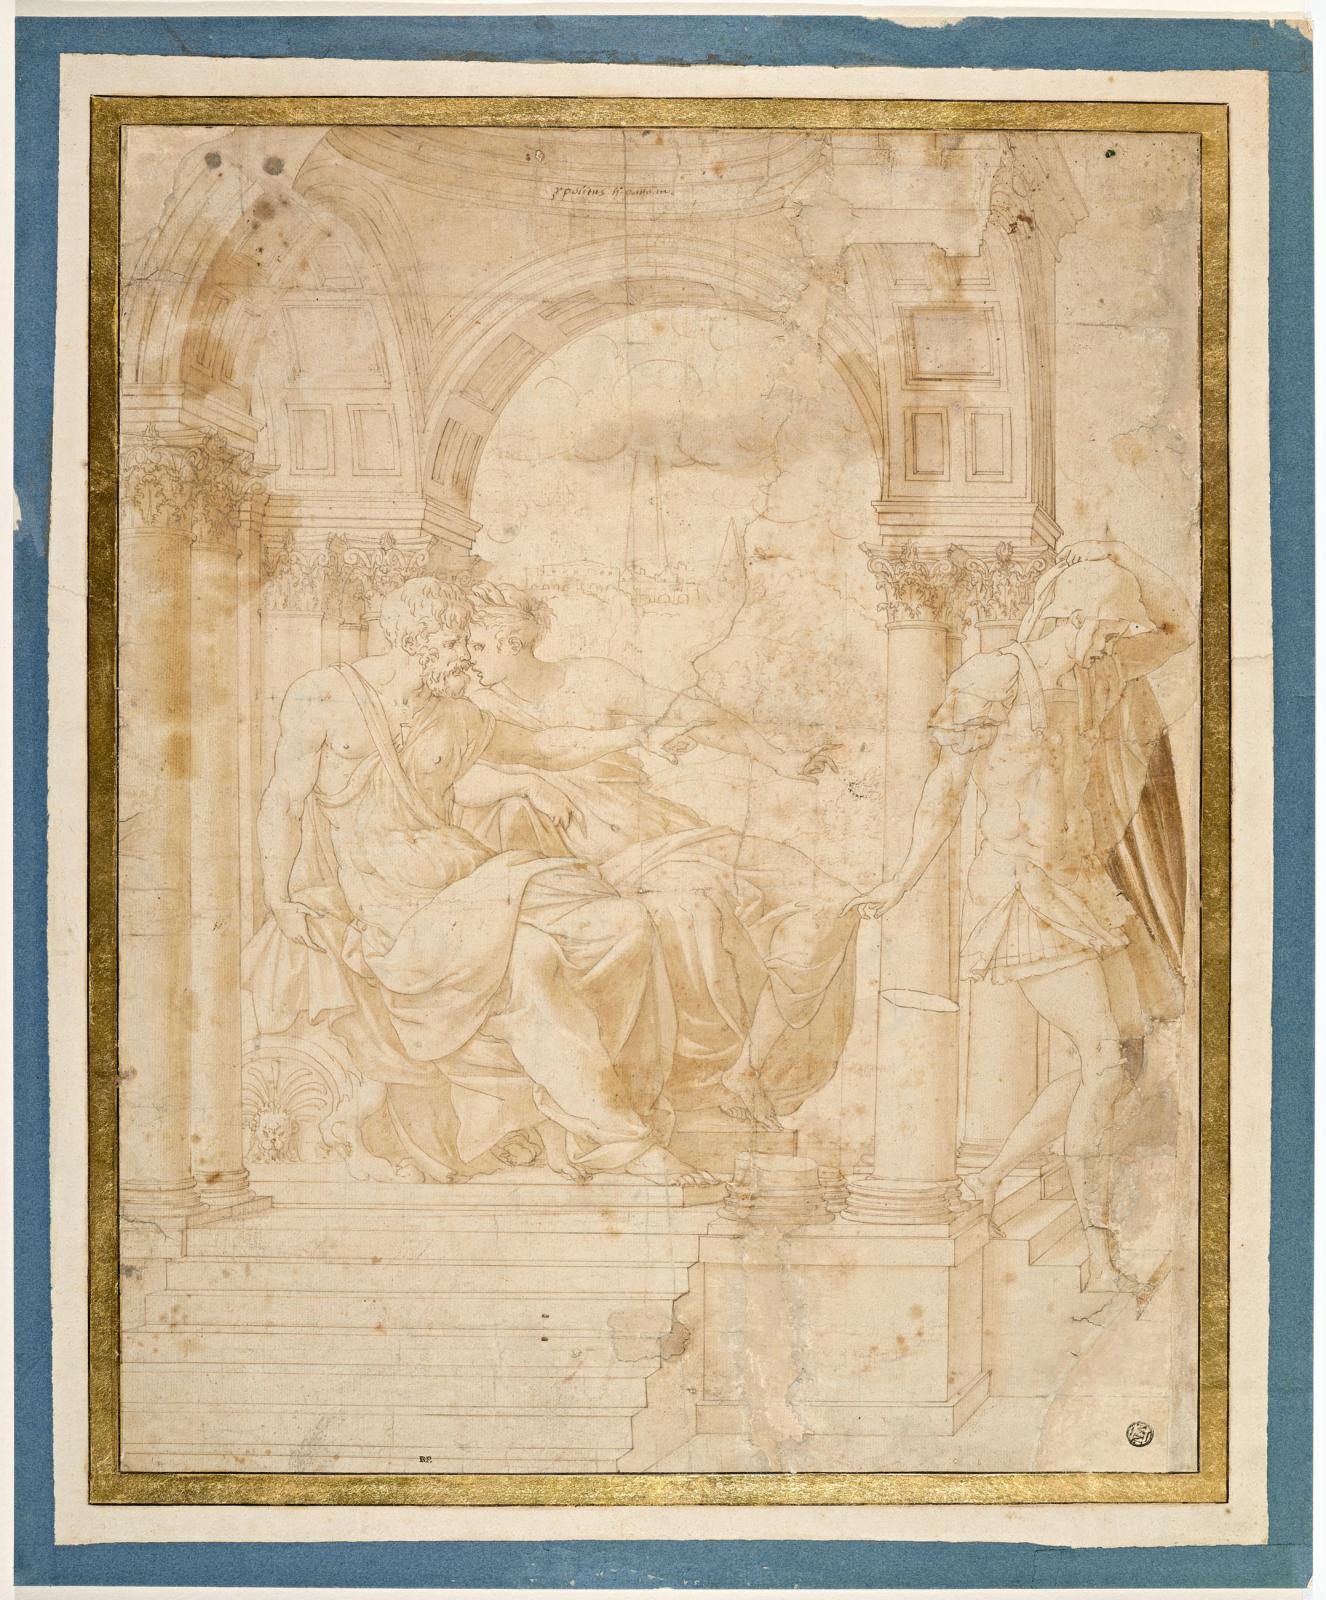 Francesco Primaticcio, dit le Primatice (1504-1570), Hippolyte accusé par Phèdreauprès de Thésée, Paris (détail), musée du Louvre, départe